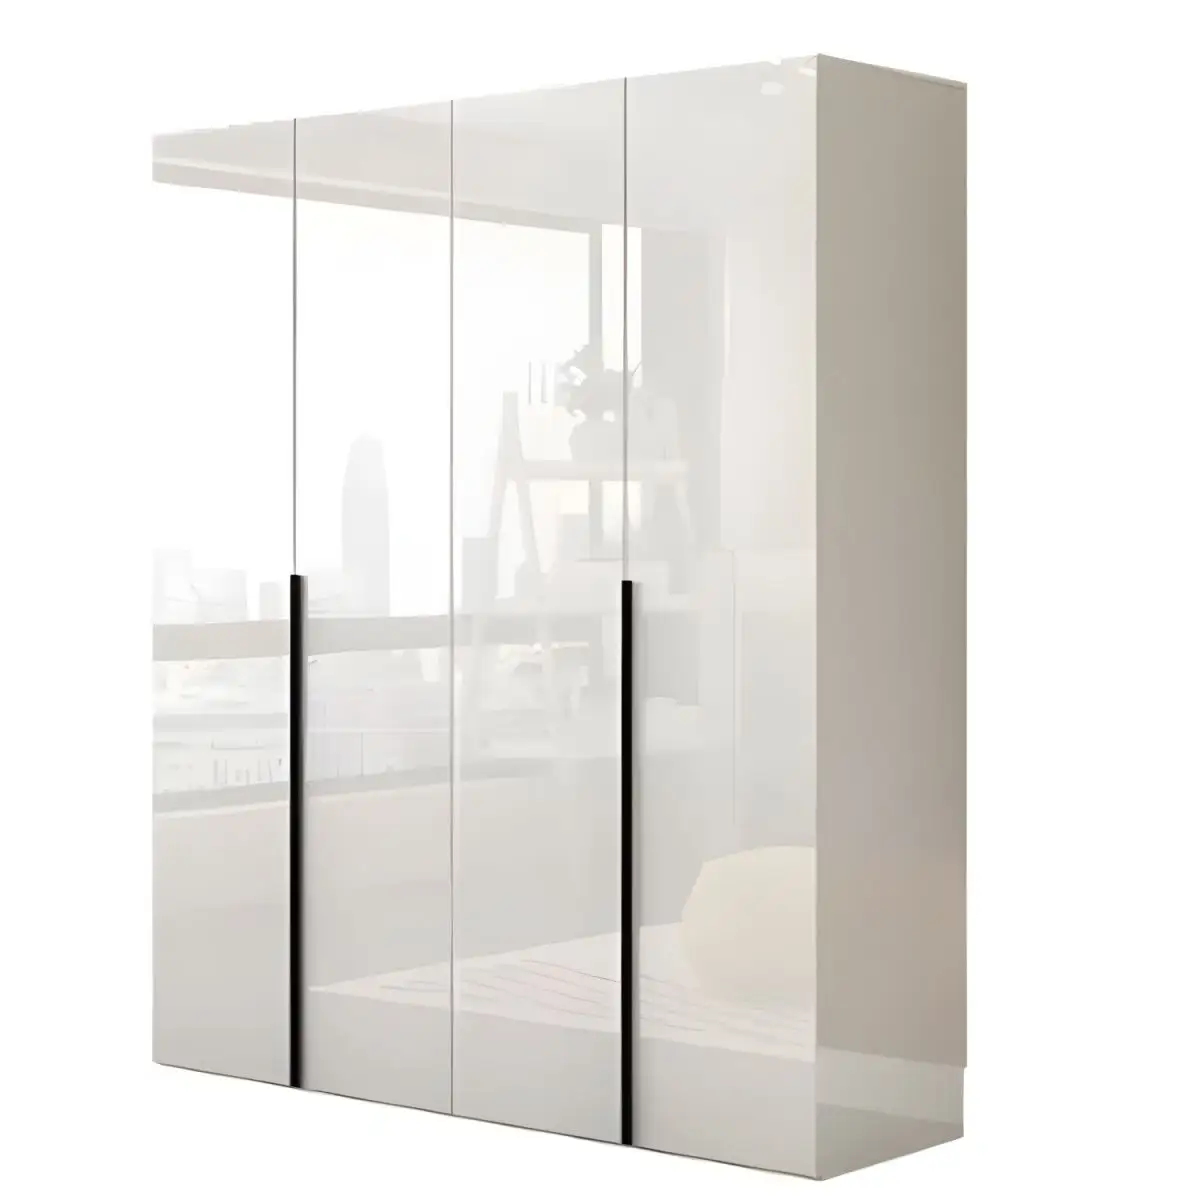 Desain kecil kustom Modern kabinet lemari pakaian almirah putih tunggal dengan meja rias ruang tamu kamar tidur lemari kayu